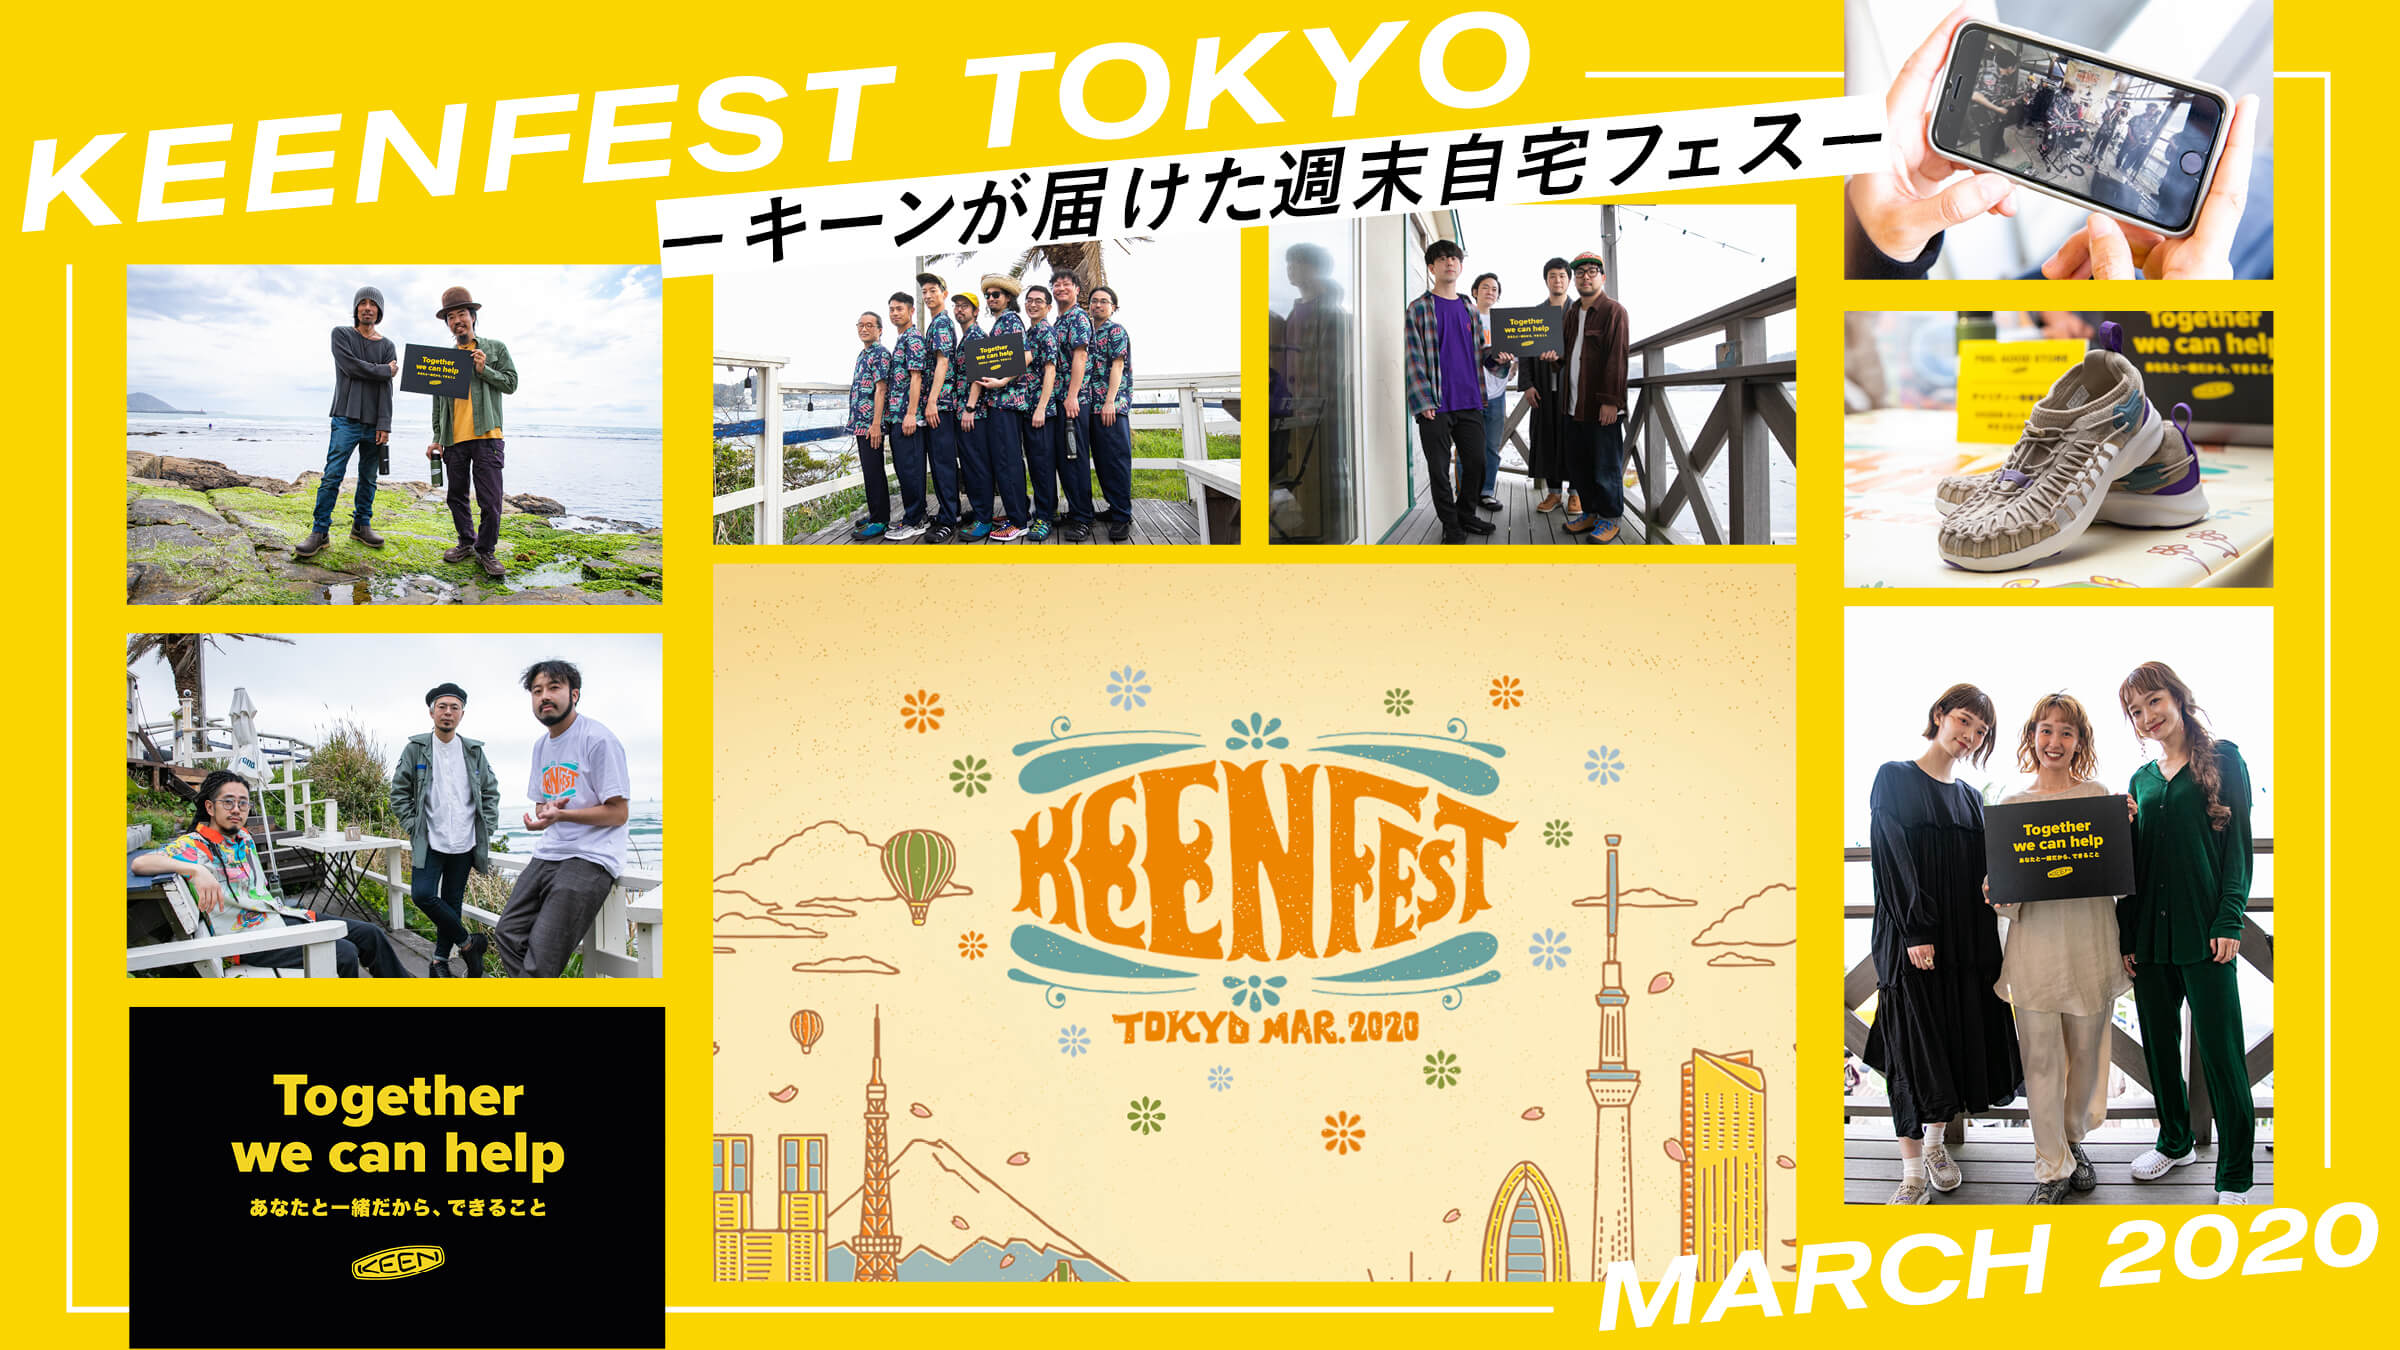 キーンが届けた週末自宅フェス「KEENFEST TOKYO MARCH 2020」